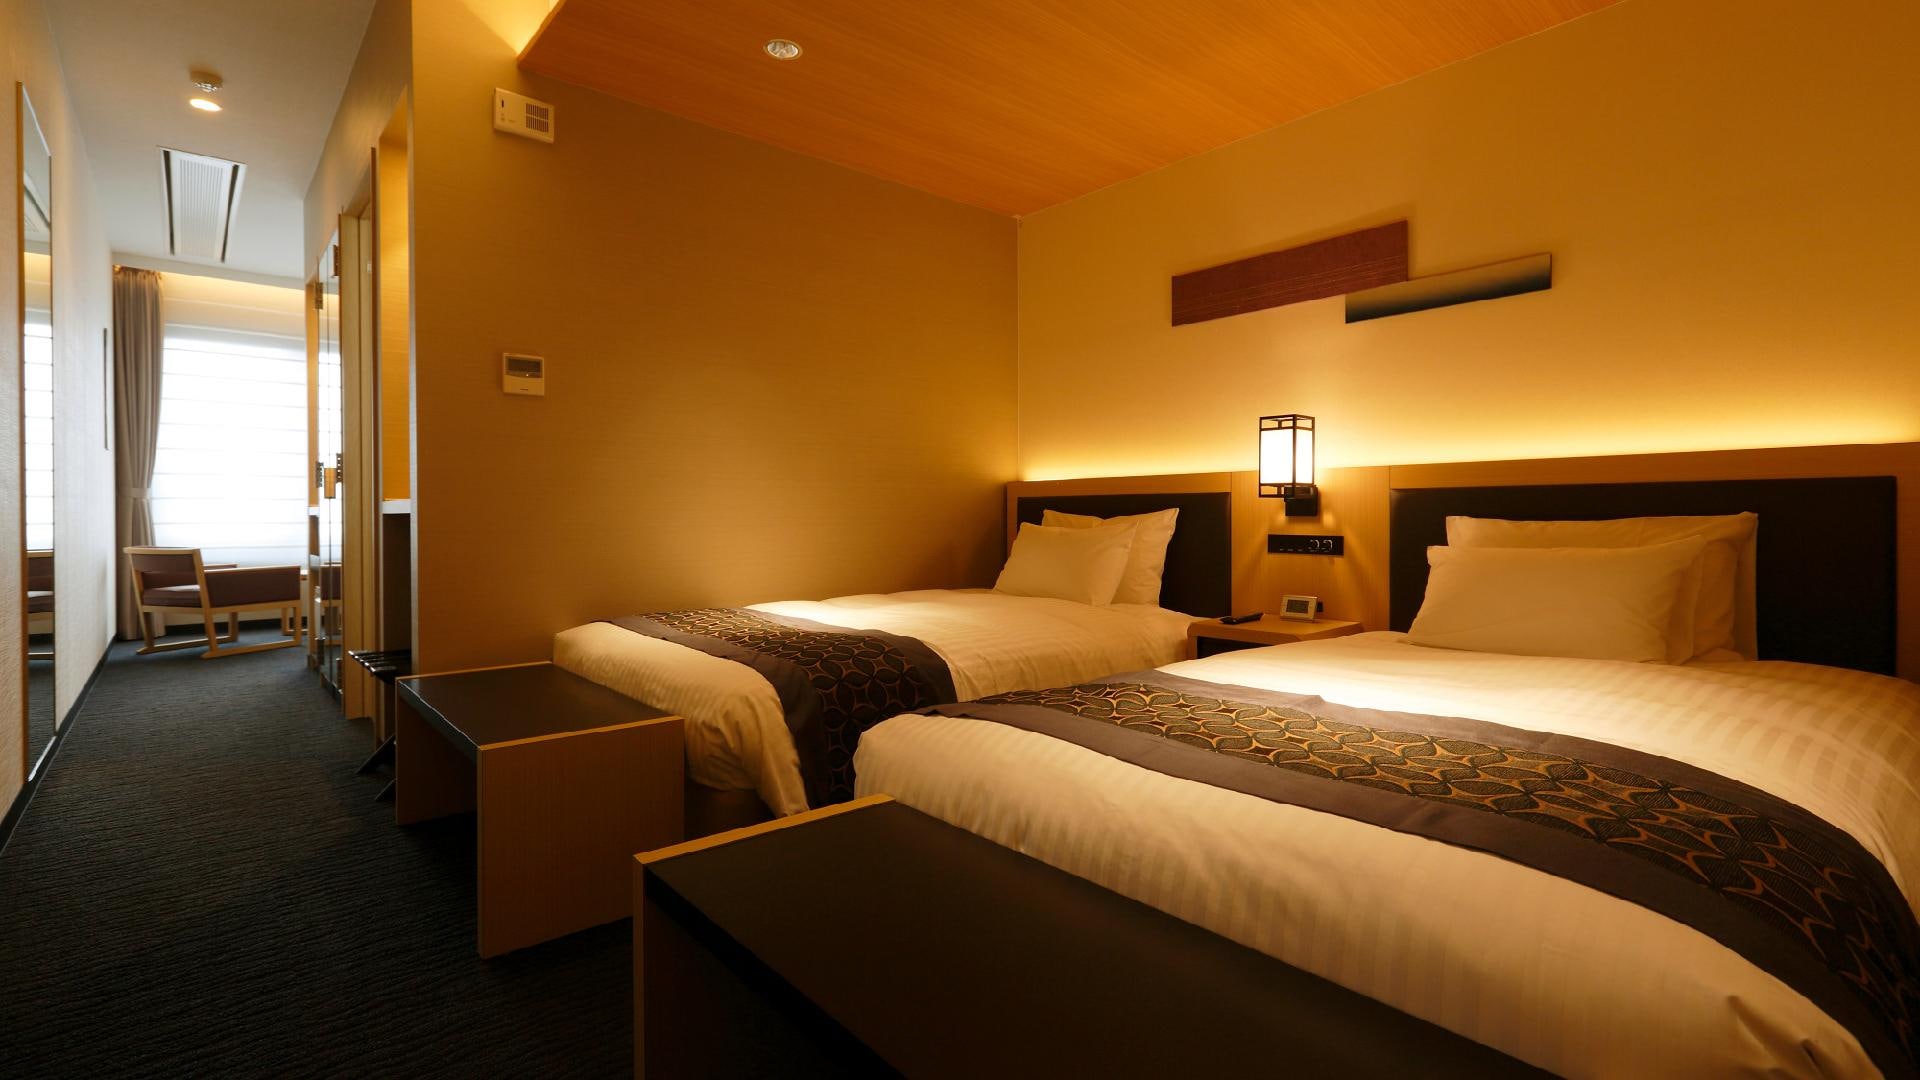 32㎡的西式房间，现代日式风格。独立的标准，有独立的客厅和卧室。